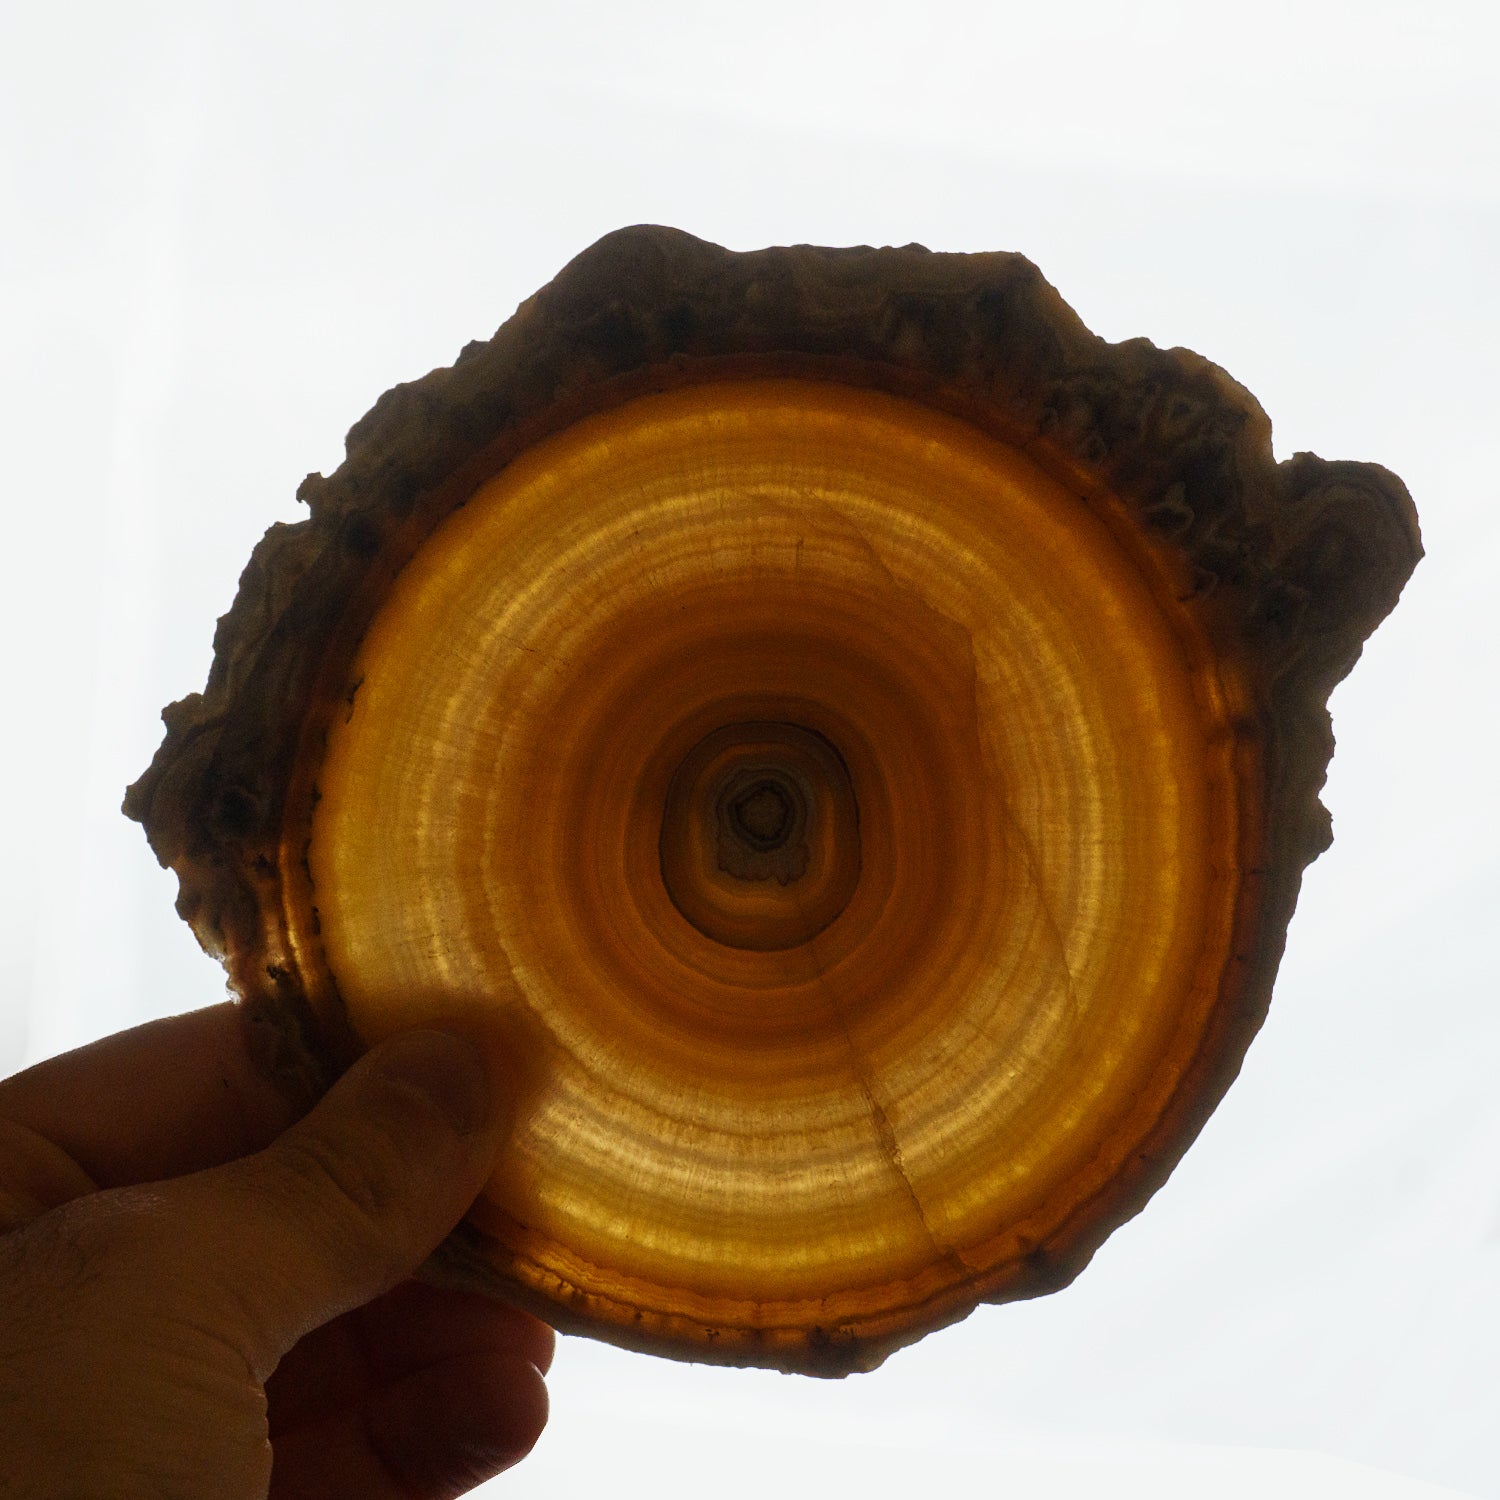 Genuine Aragonite Stalactite Slice from Mexico (311.6 grams)